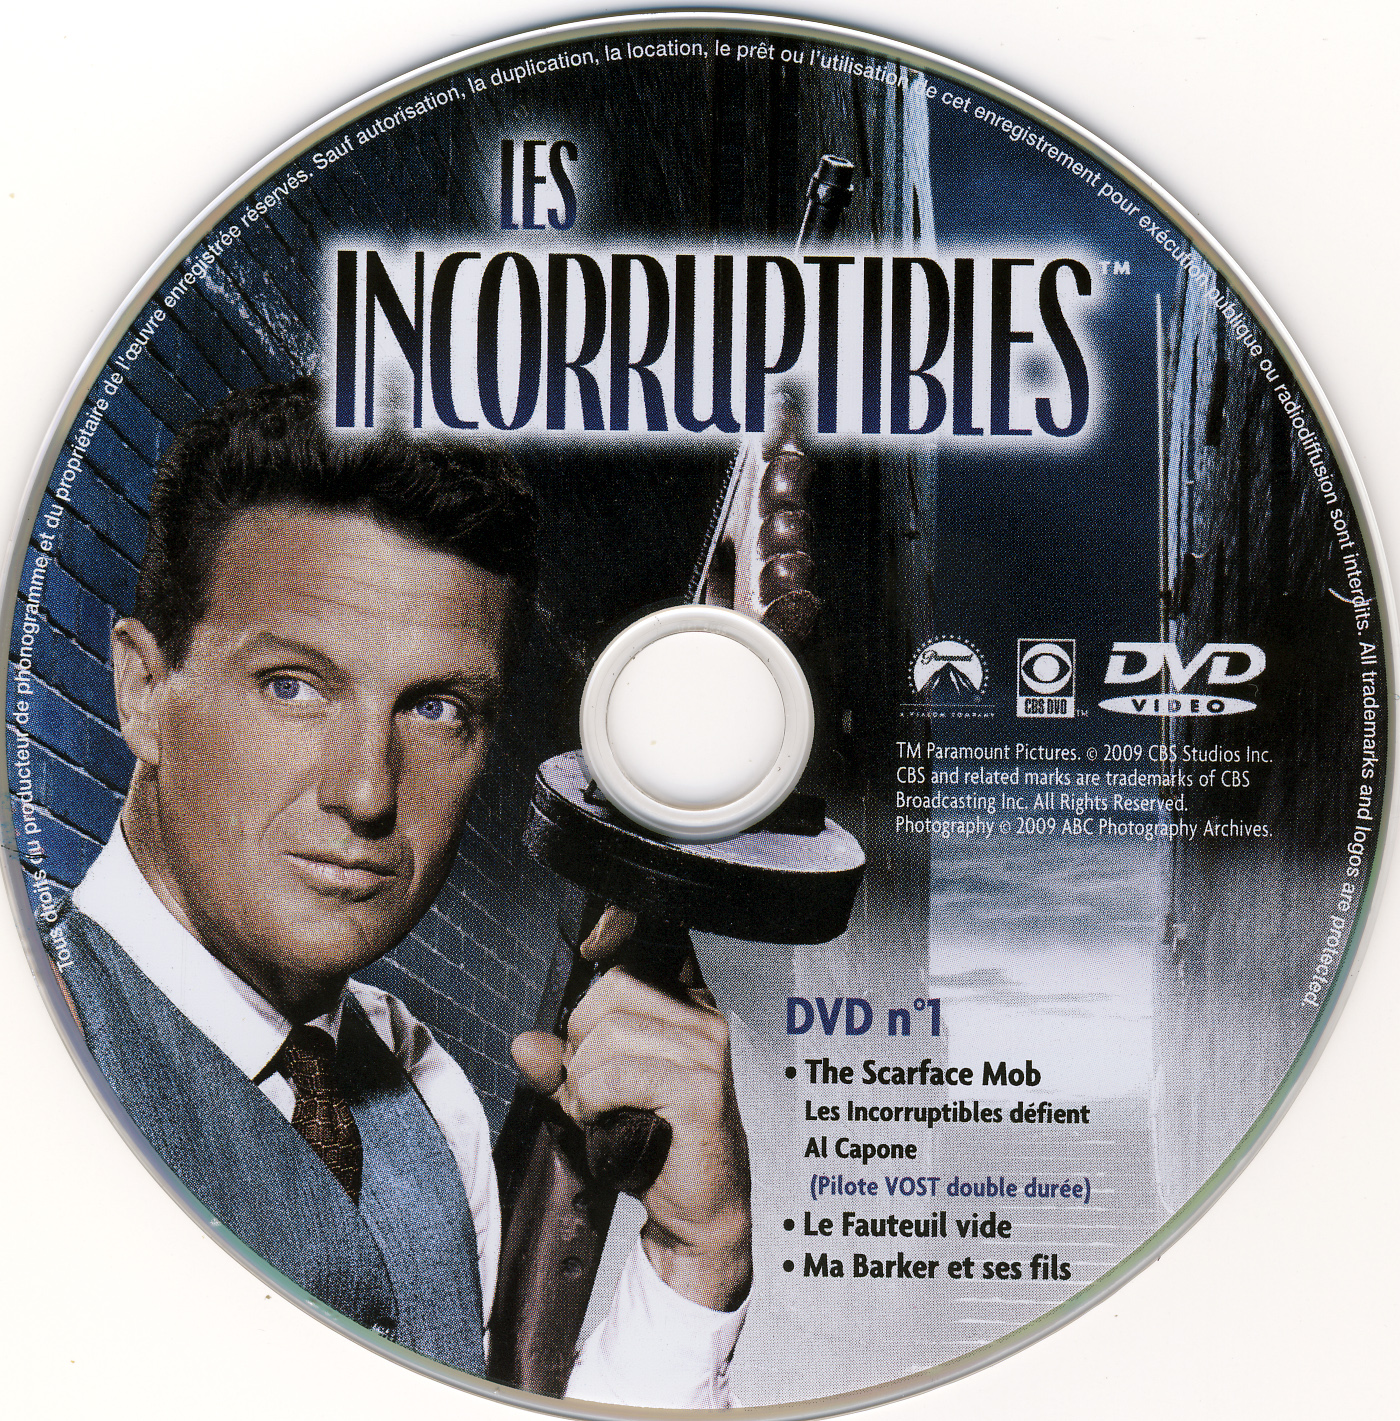 Les incorruptibles intgrale DVD 01